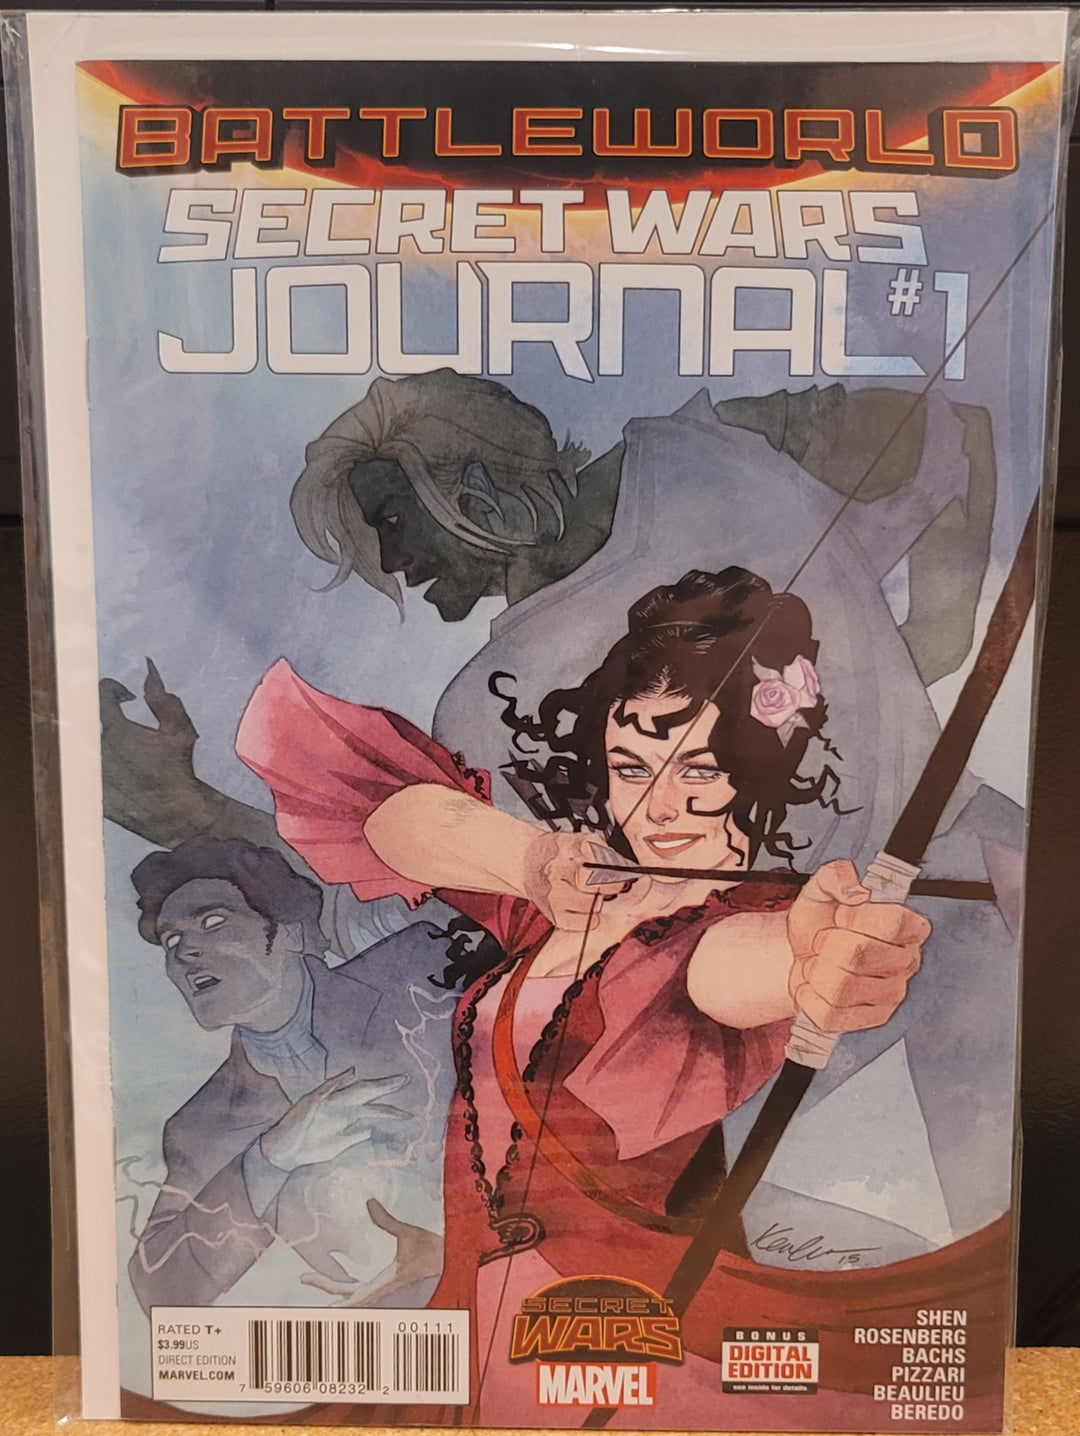 Battleworld Secret Wars Journal 1er número Cómic Marvel Now